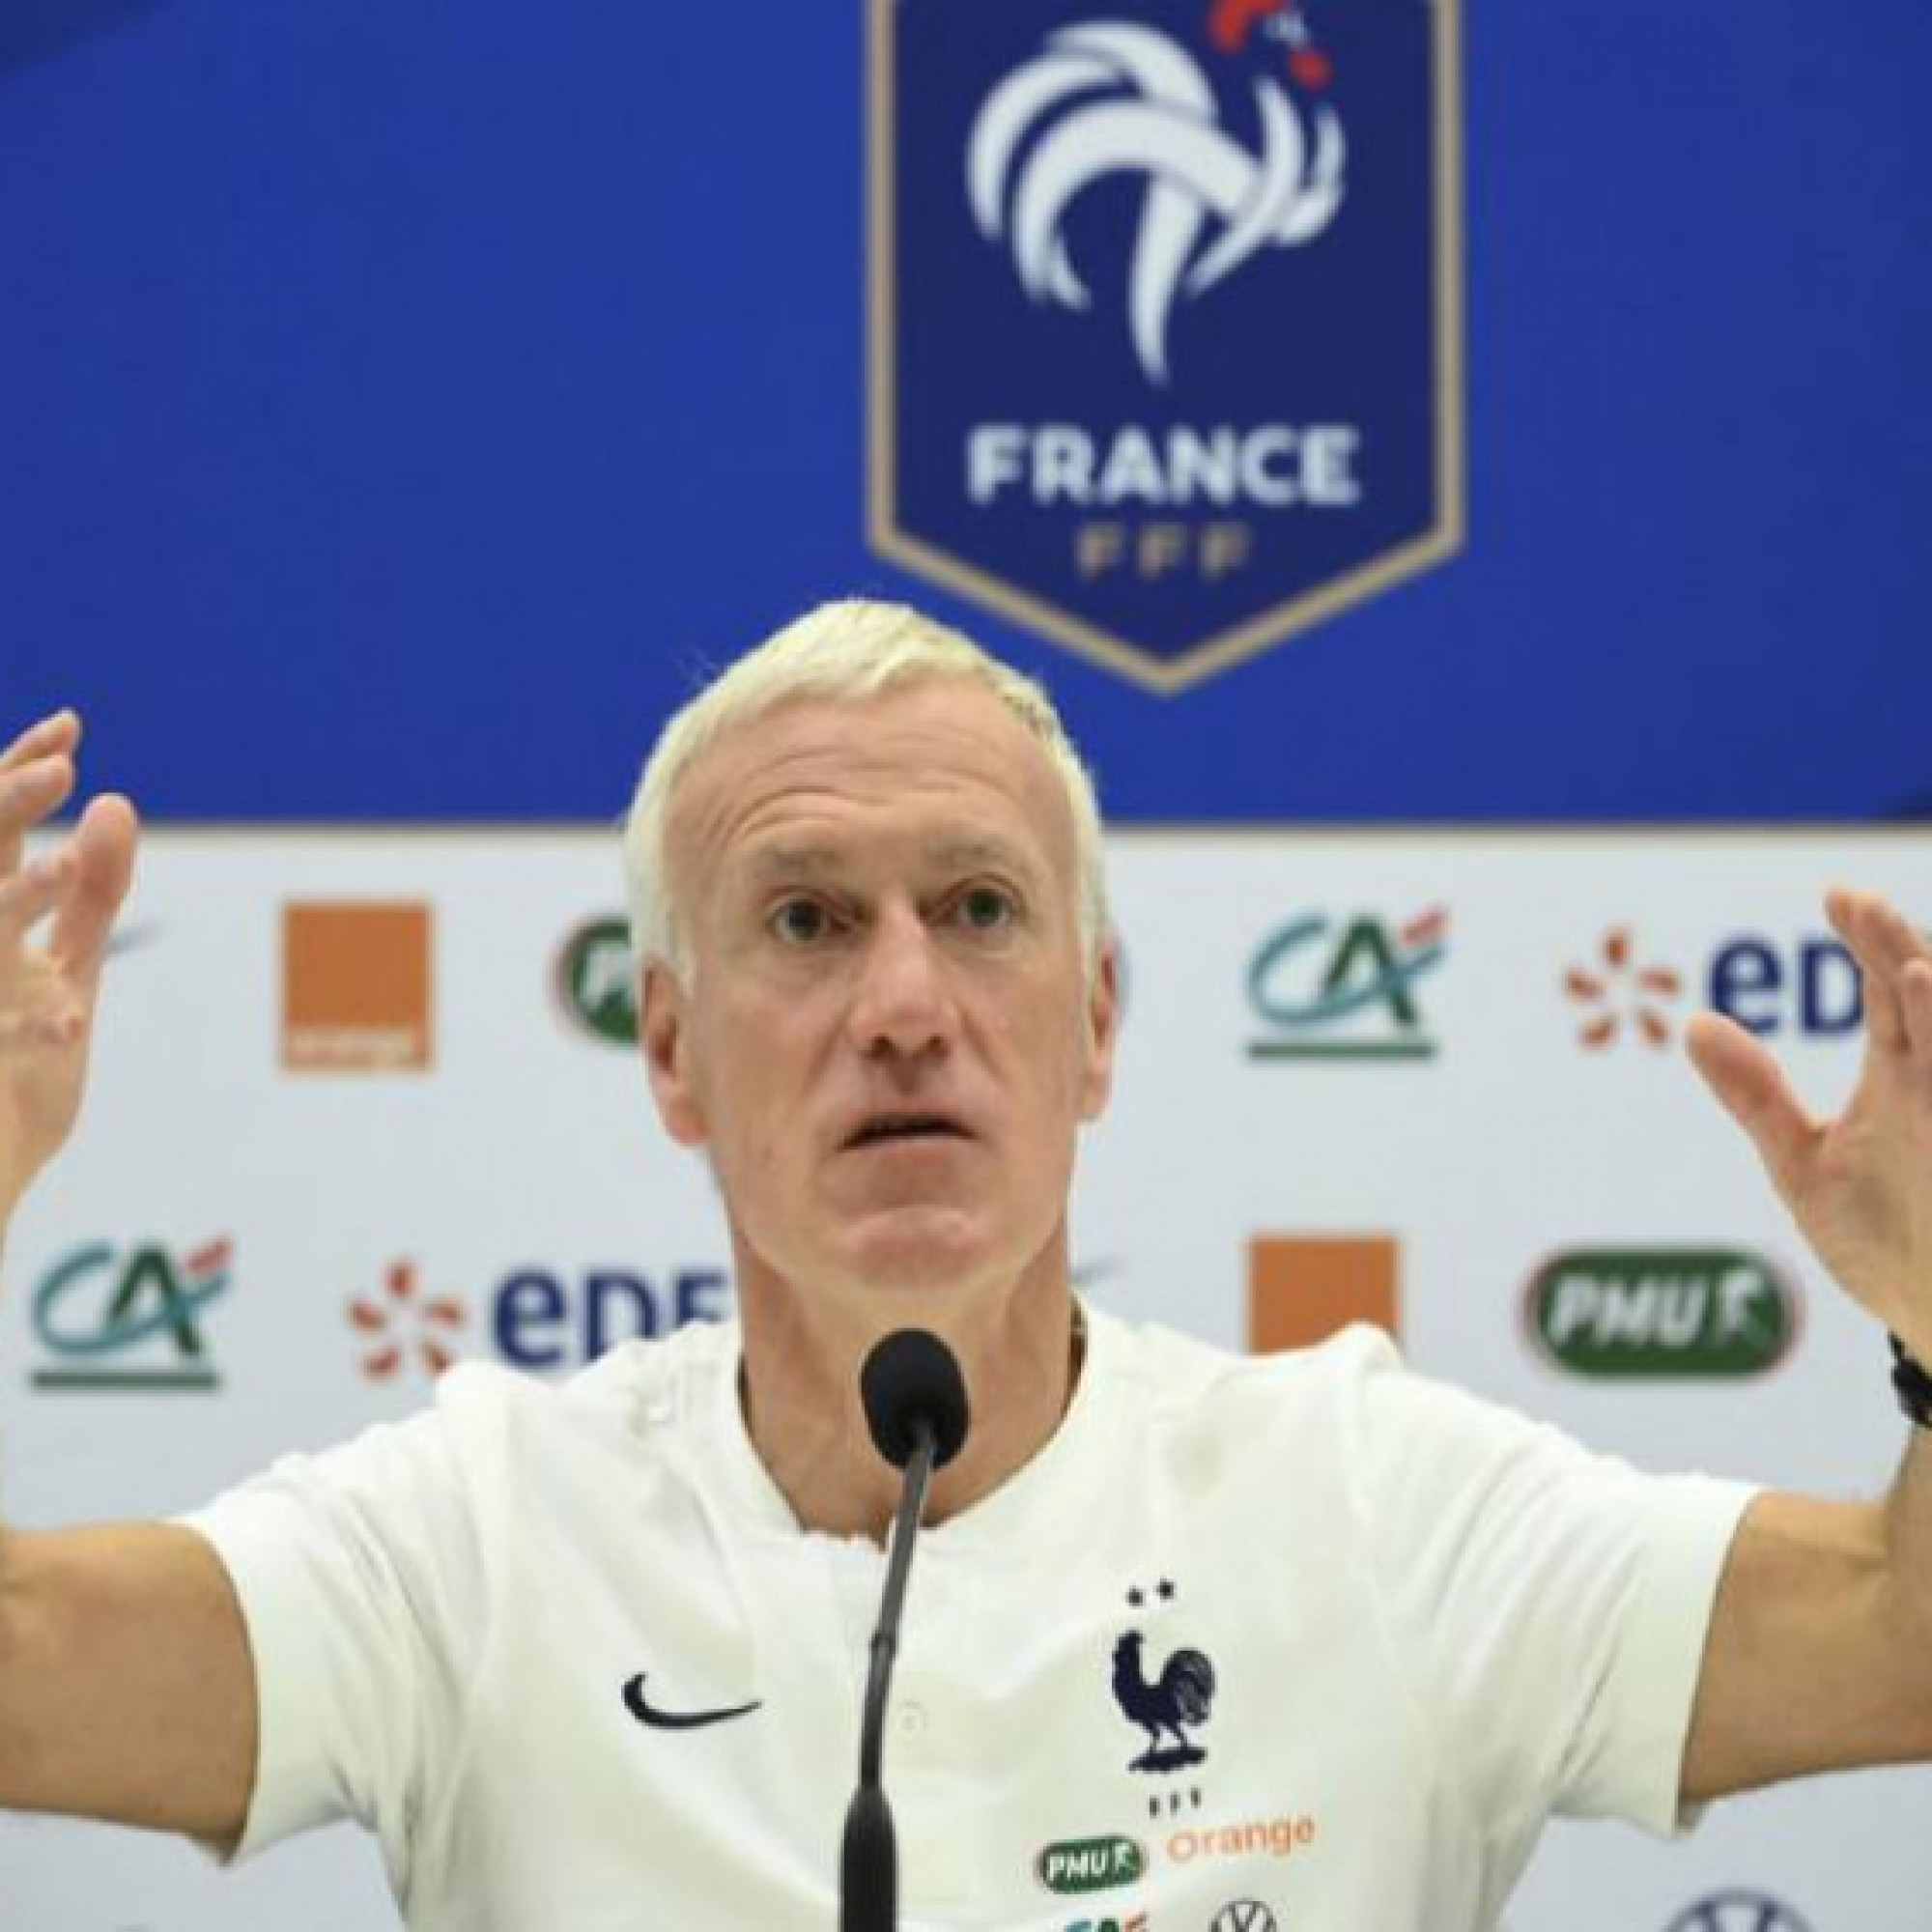  - Đại chiến Pháp - Anh tứ kết World Cup: Deschamps cậy nhờ Mbappe, Southgate xác nhận Sterling trở lại